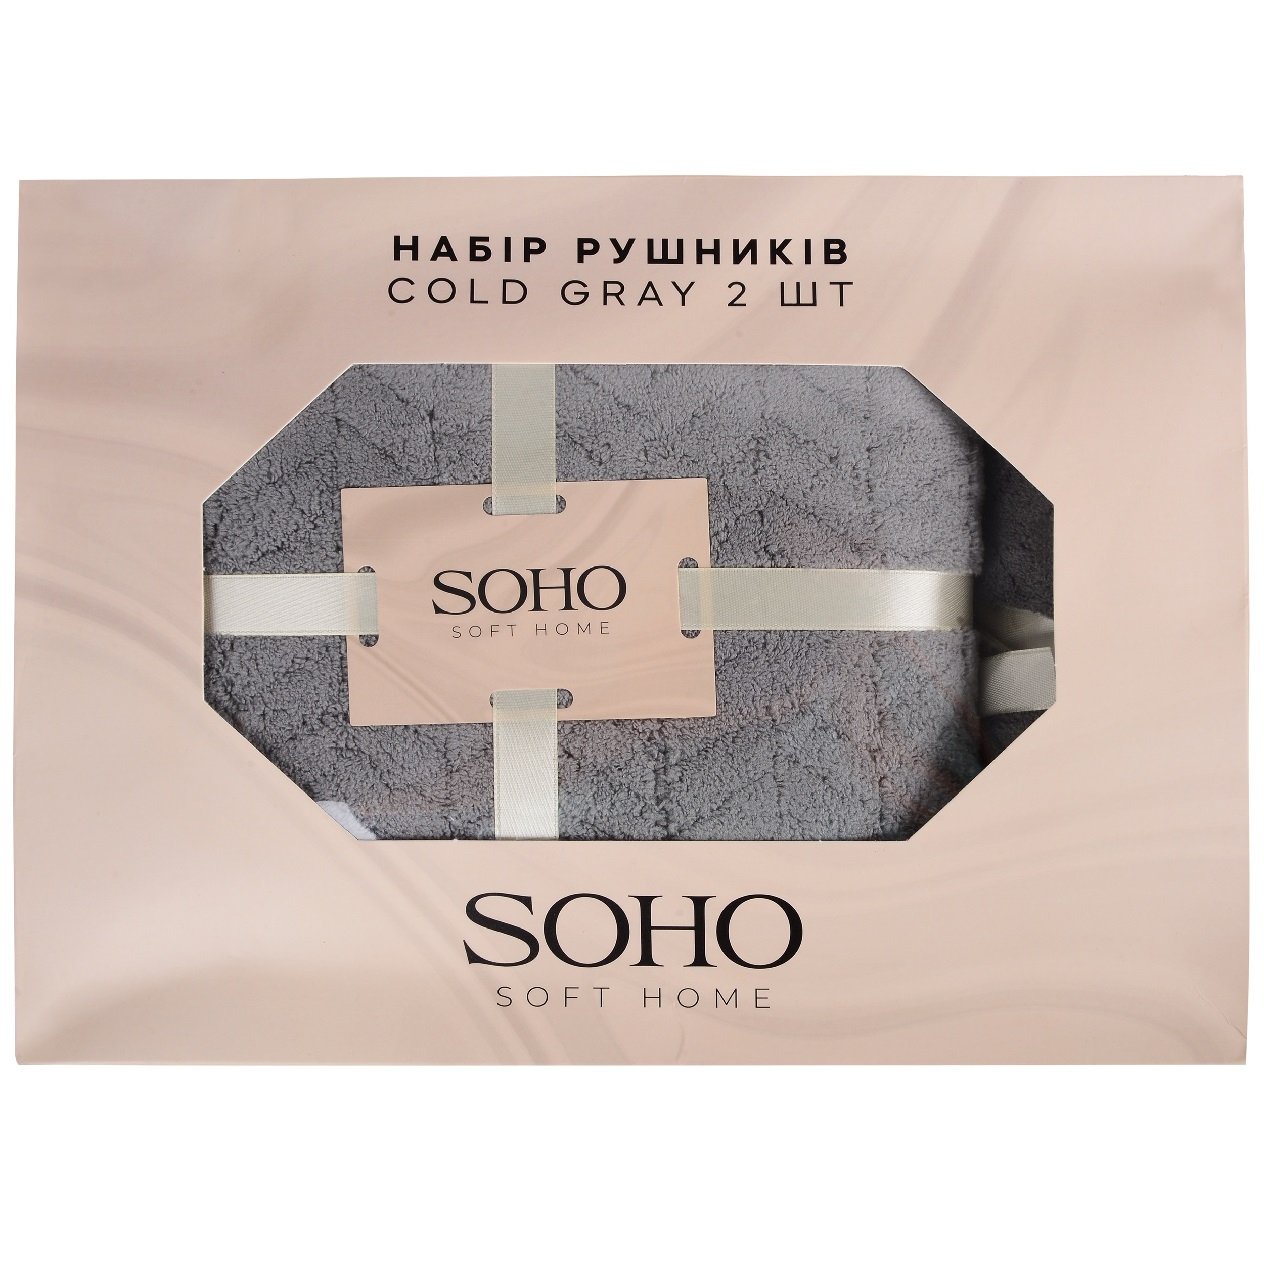 Набір рушників Soho Cold gray, в коробці, 35х75 см +70х140 см, 2 шт., сірий (1173К) - фото 1